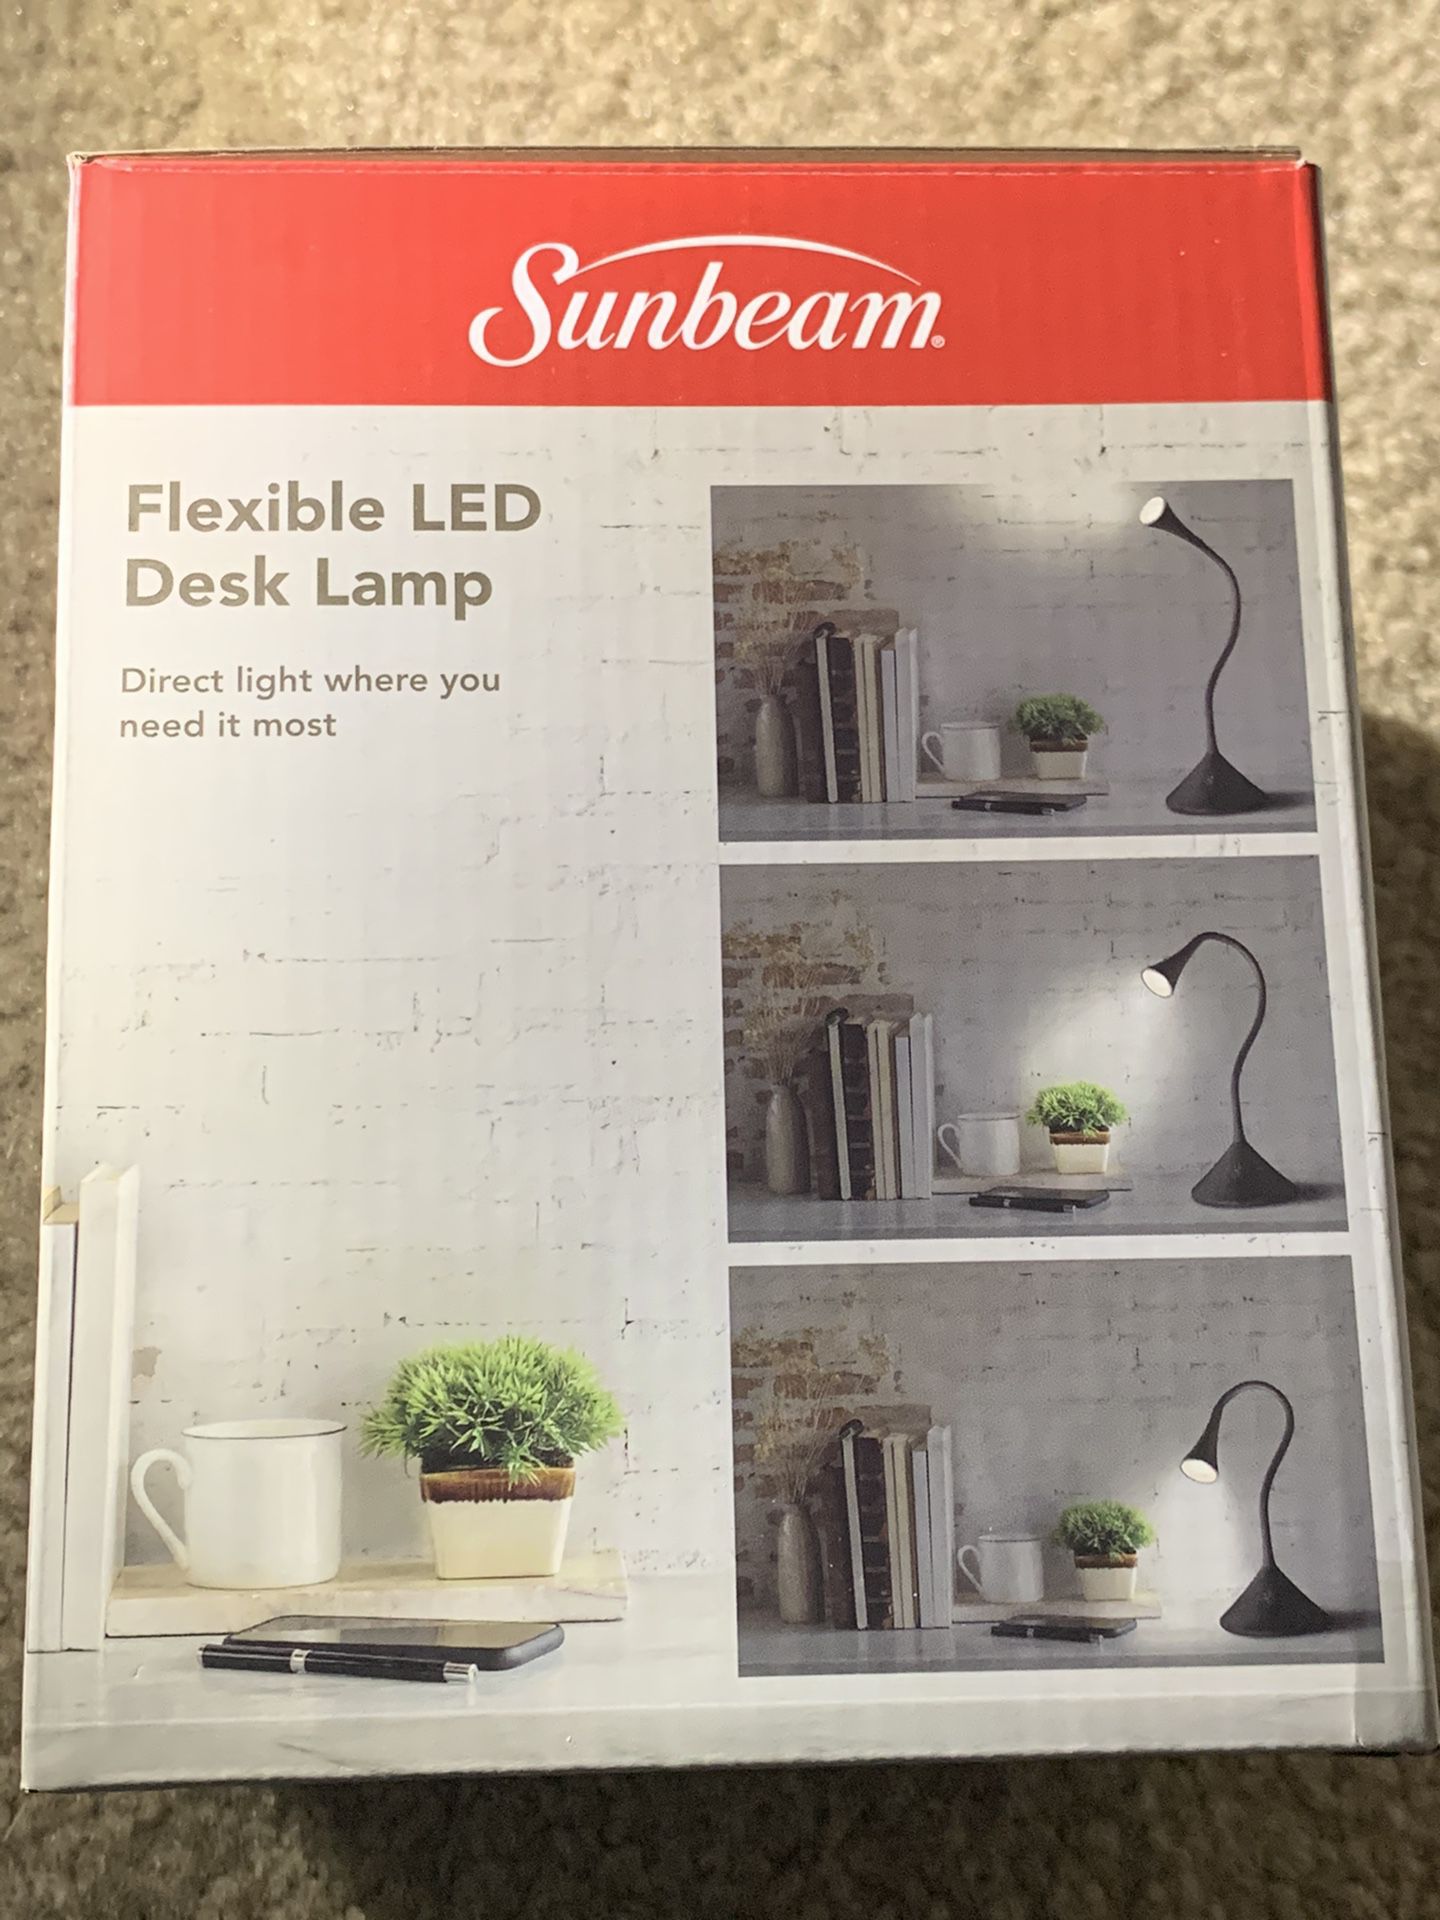 Sunbeam flexible LED desk lamp